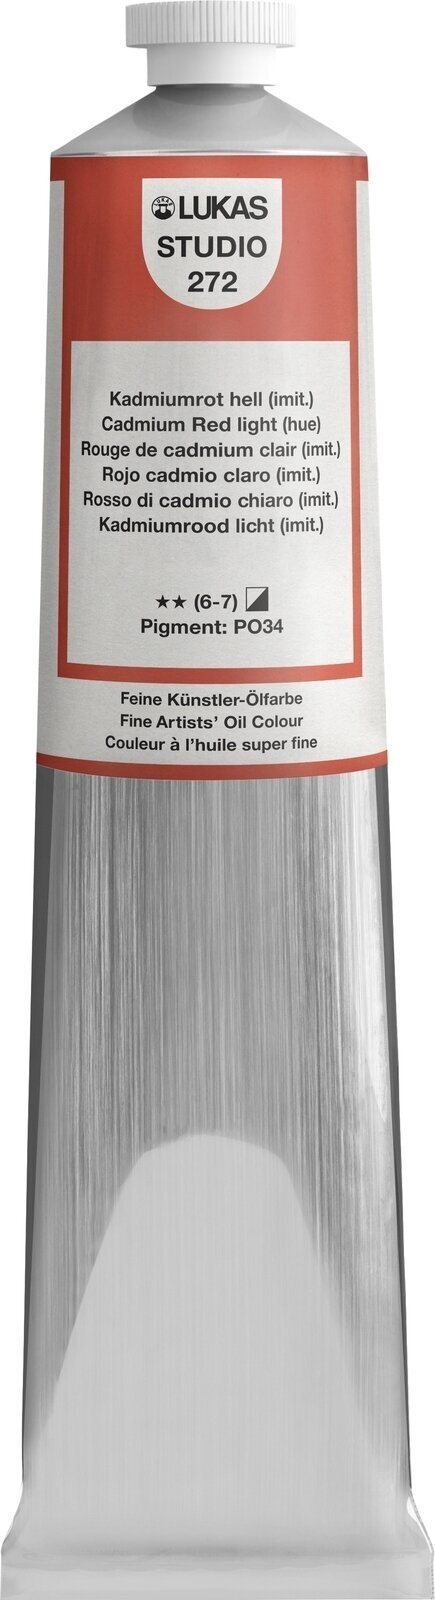 Olieverf Lukas Studio Oil Paint Aluminium Tube Olieverf Cadmium Red Light Hue 200 ml 1 stuk